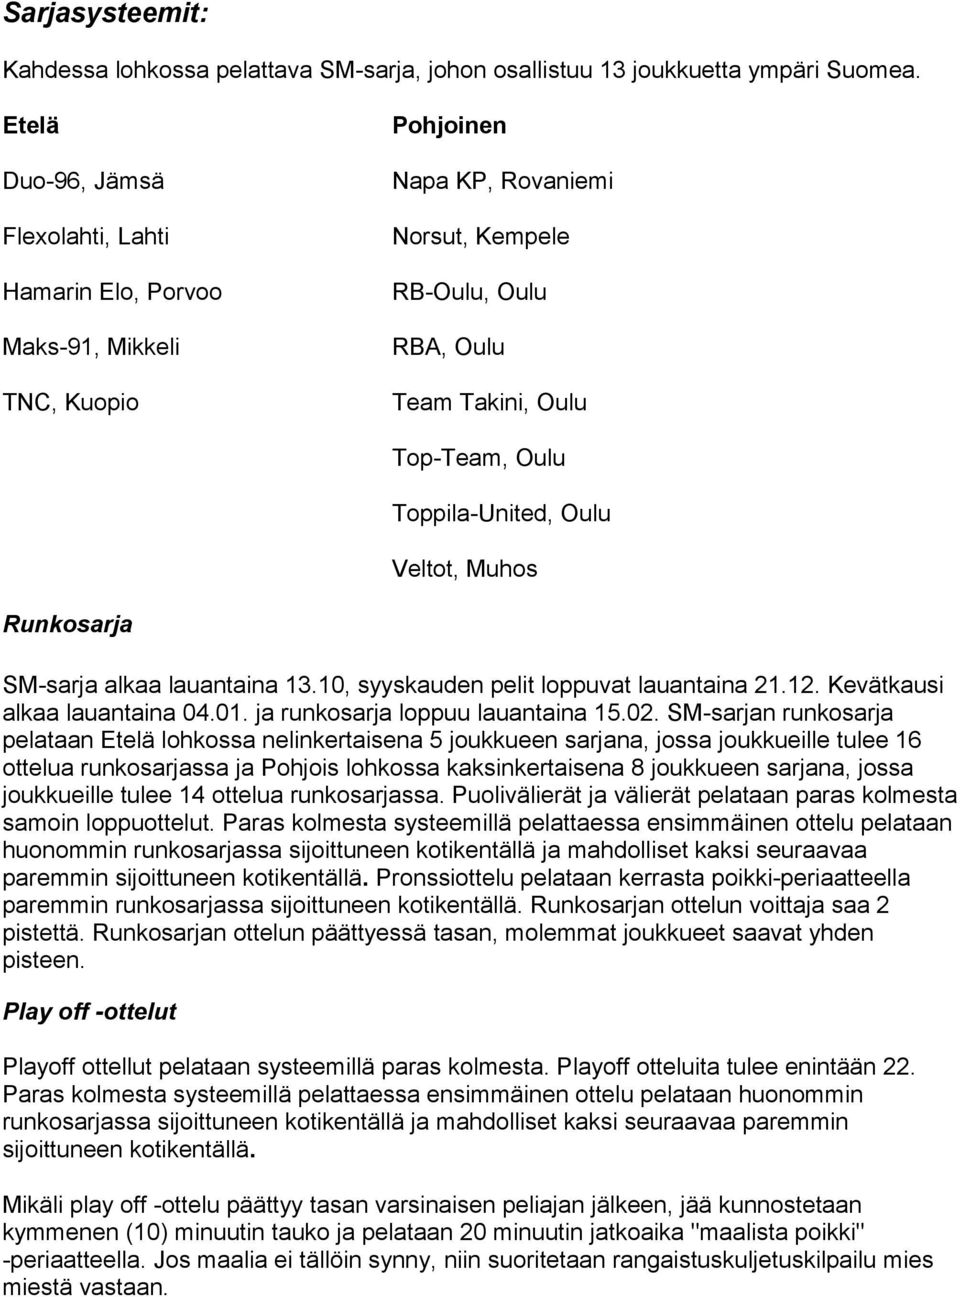 Toppila-United, Oulu Veltot, Muhos Runkosarja SM-sarja alkaa lauantaina 13.10, syyskauden pelit loppuvat lauantaina 21.12. Kevätkausi alkaa lauantaina 04.01. ja runkosarja loppuu lauantaina 15.02.